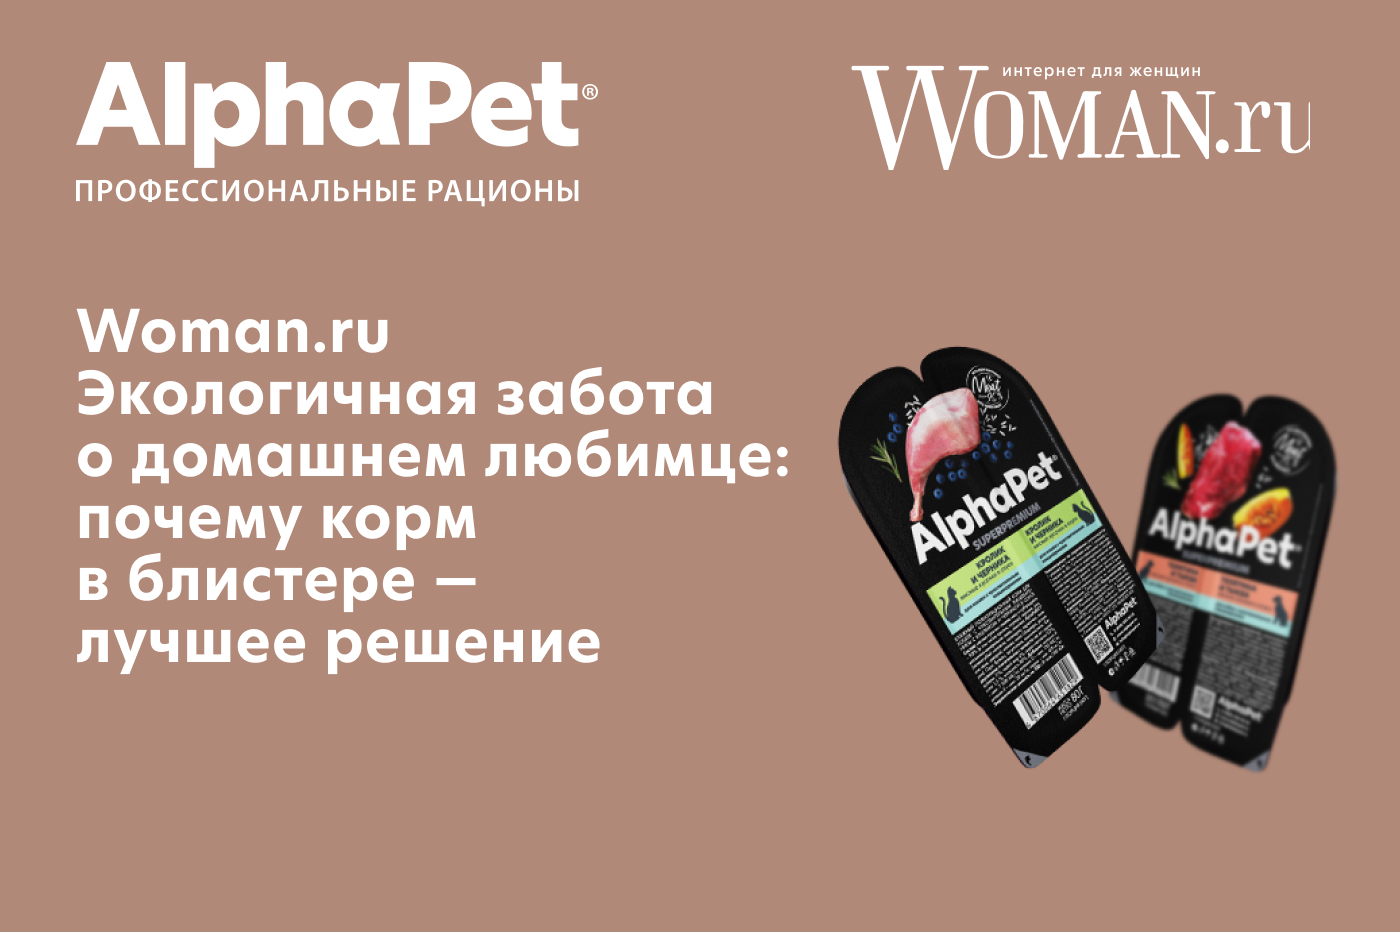 Woman.ru Экологичная забота о домашнем любимце: почему корм в блистере — лучшее решение